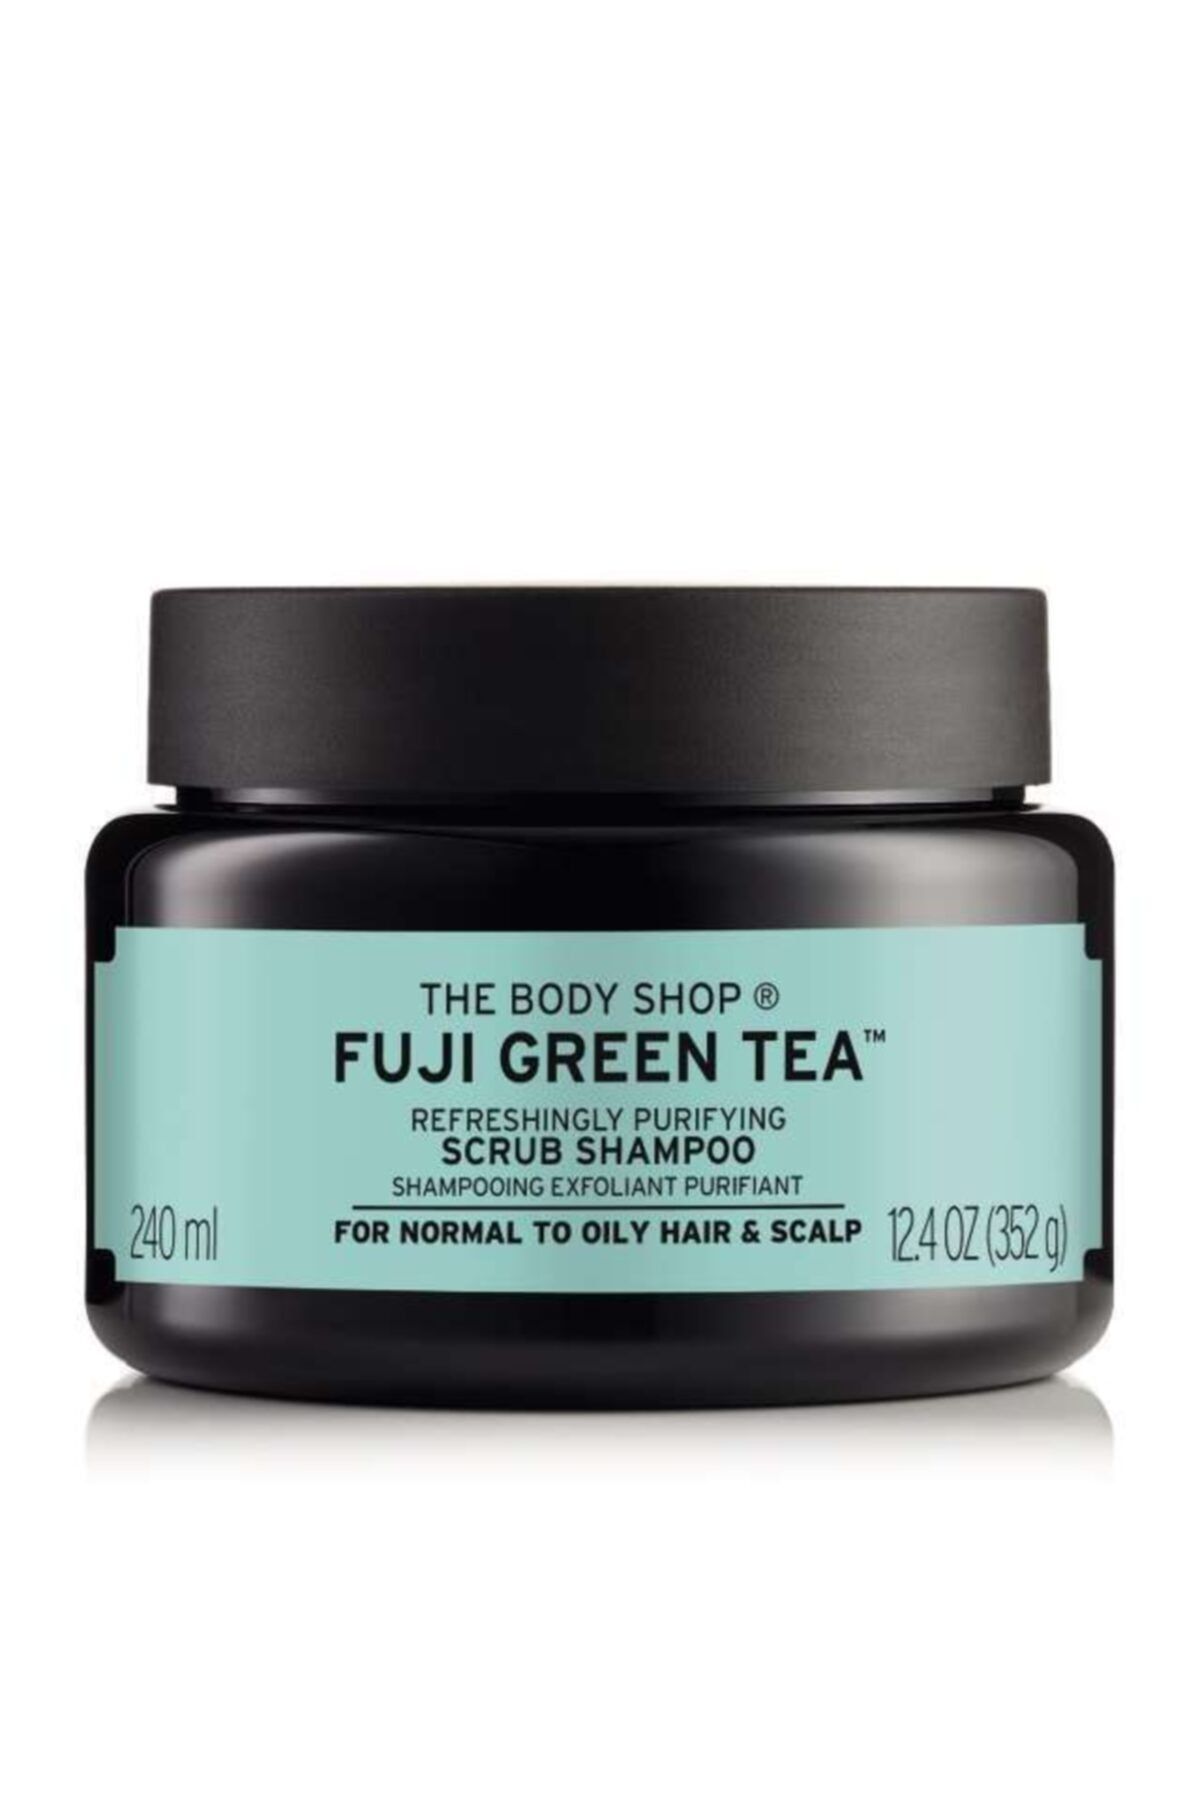 THE BODY SHOP Fuji Green Tea Saç Peelingi 240ml